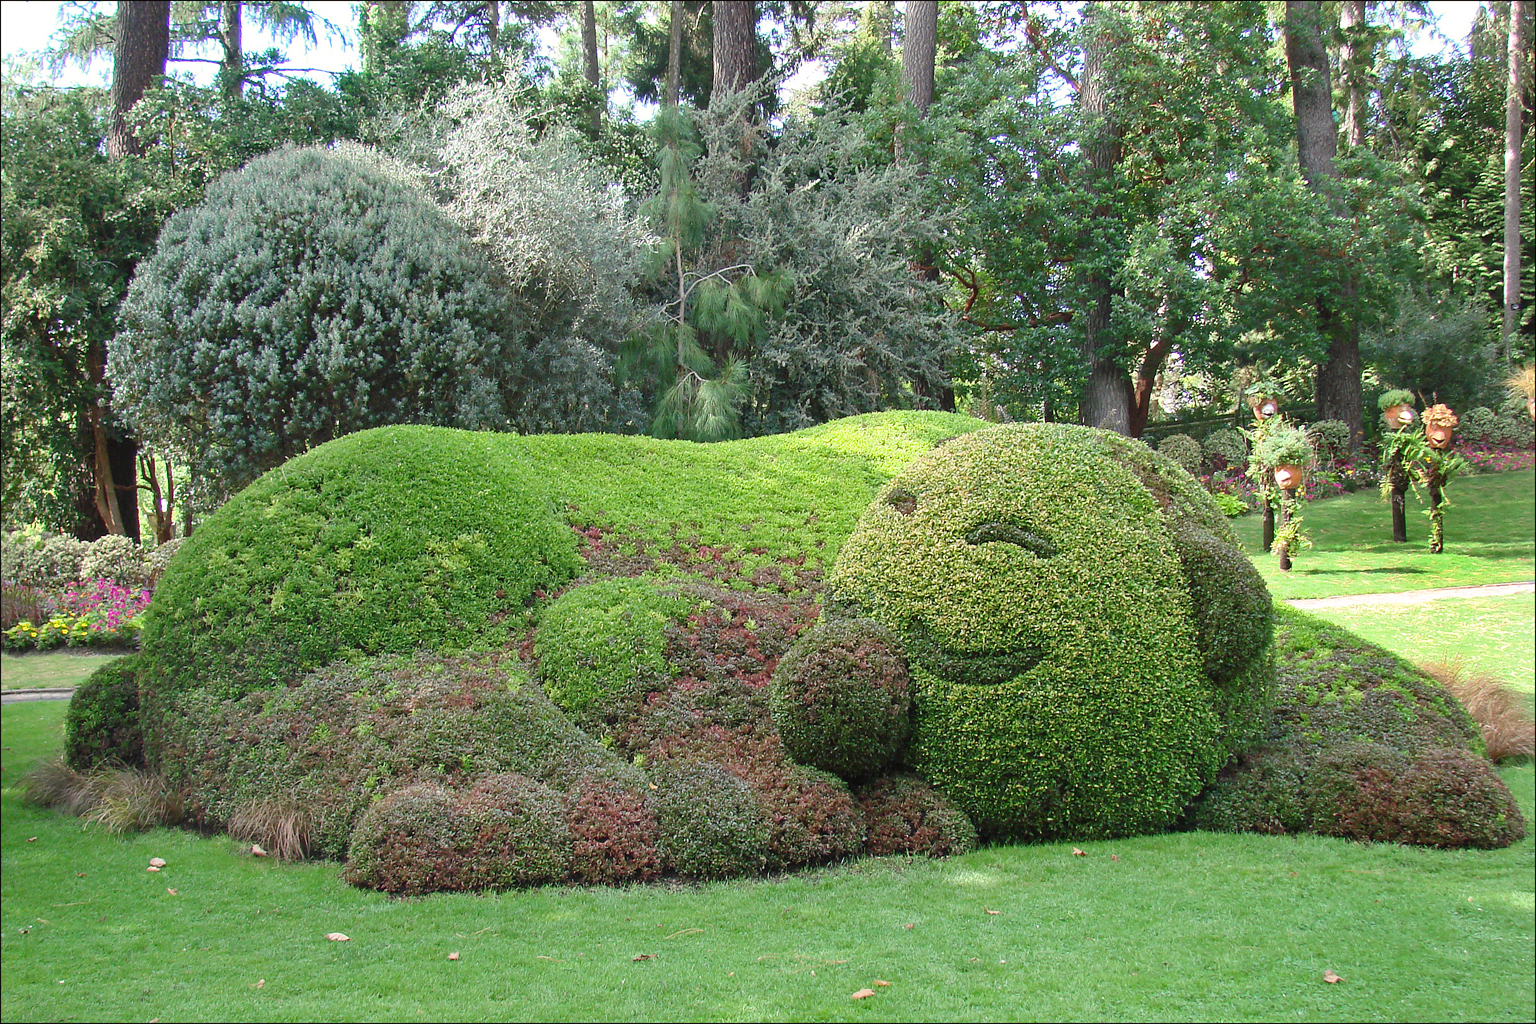 a large green hedge is shaped like a dog